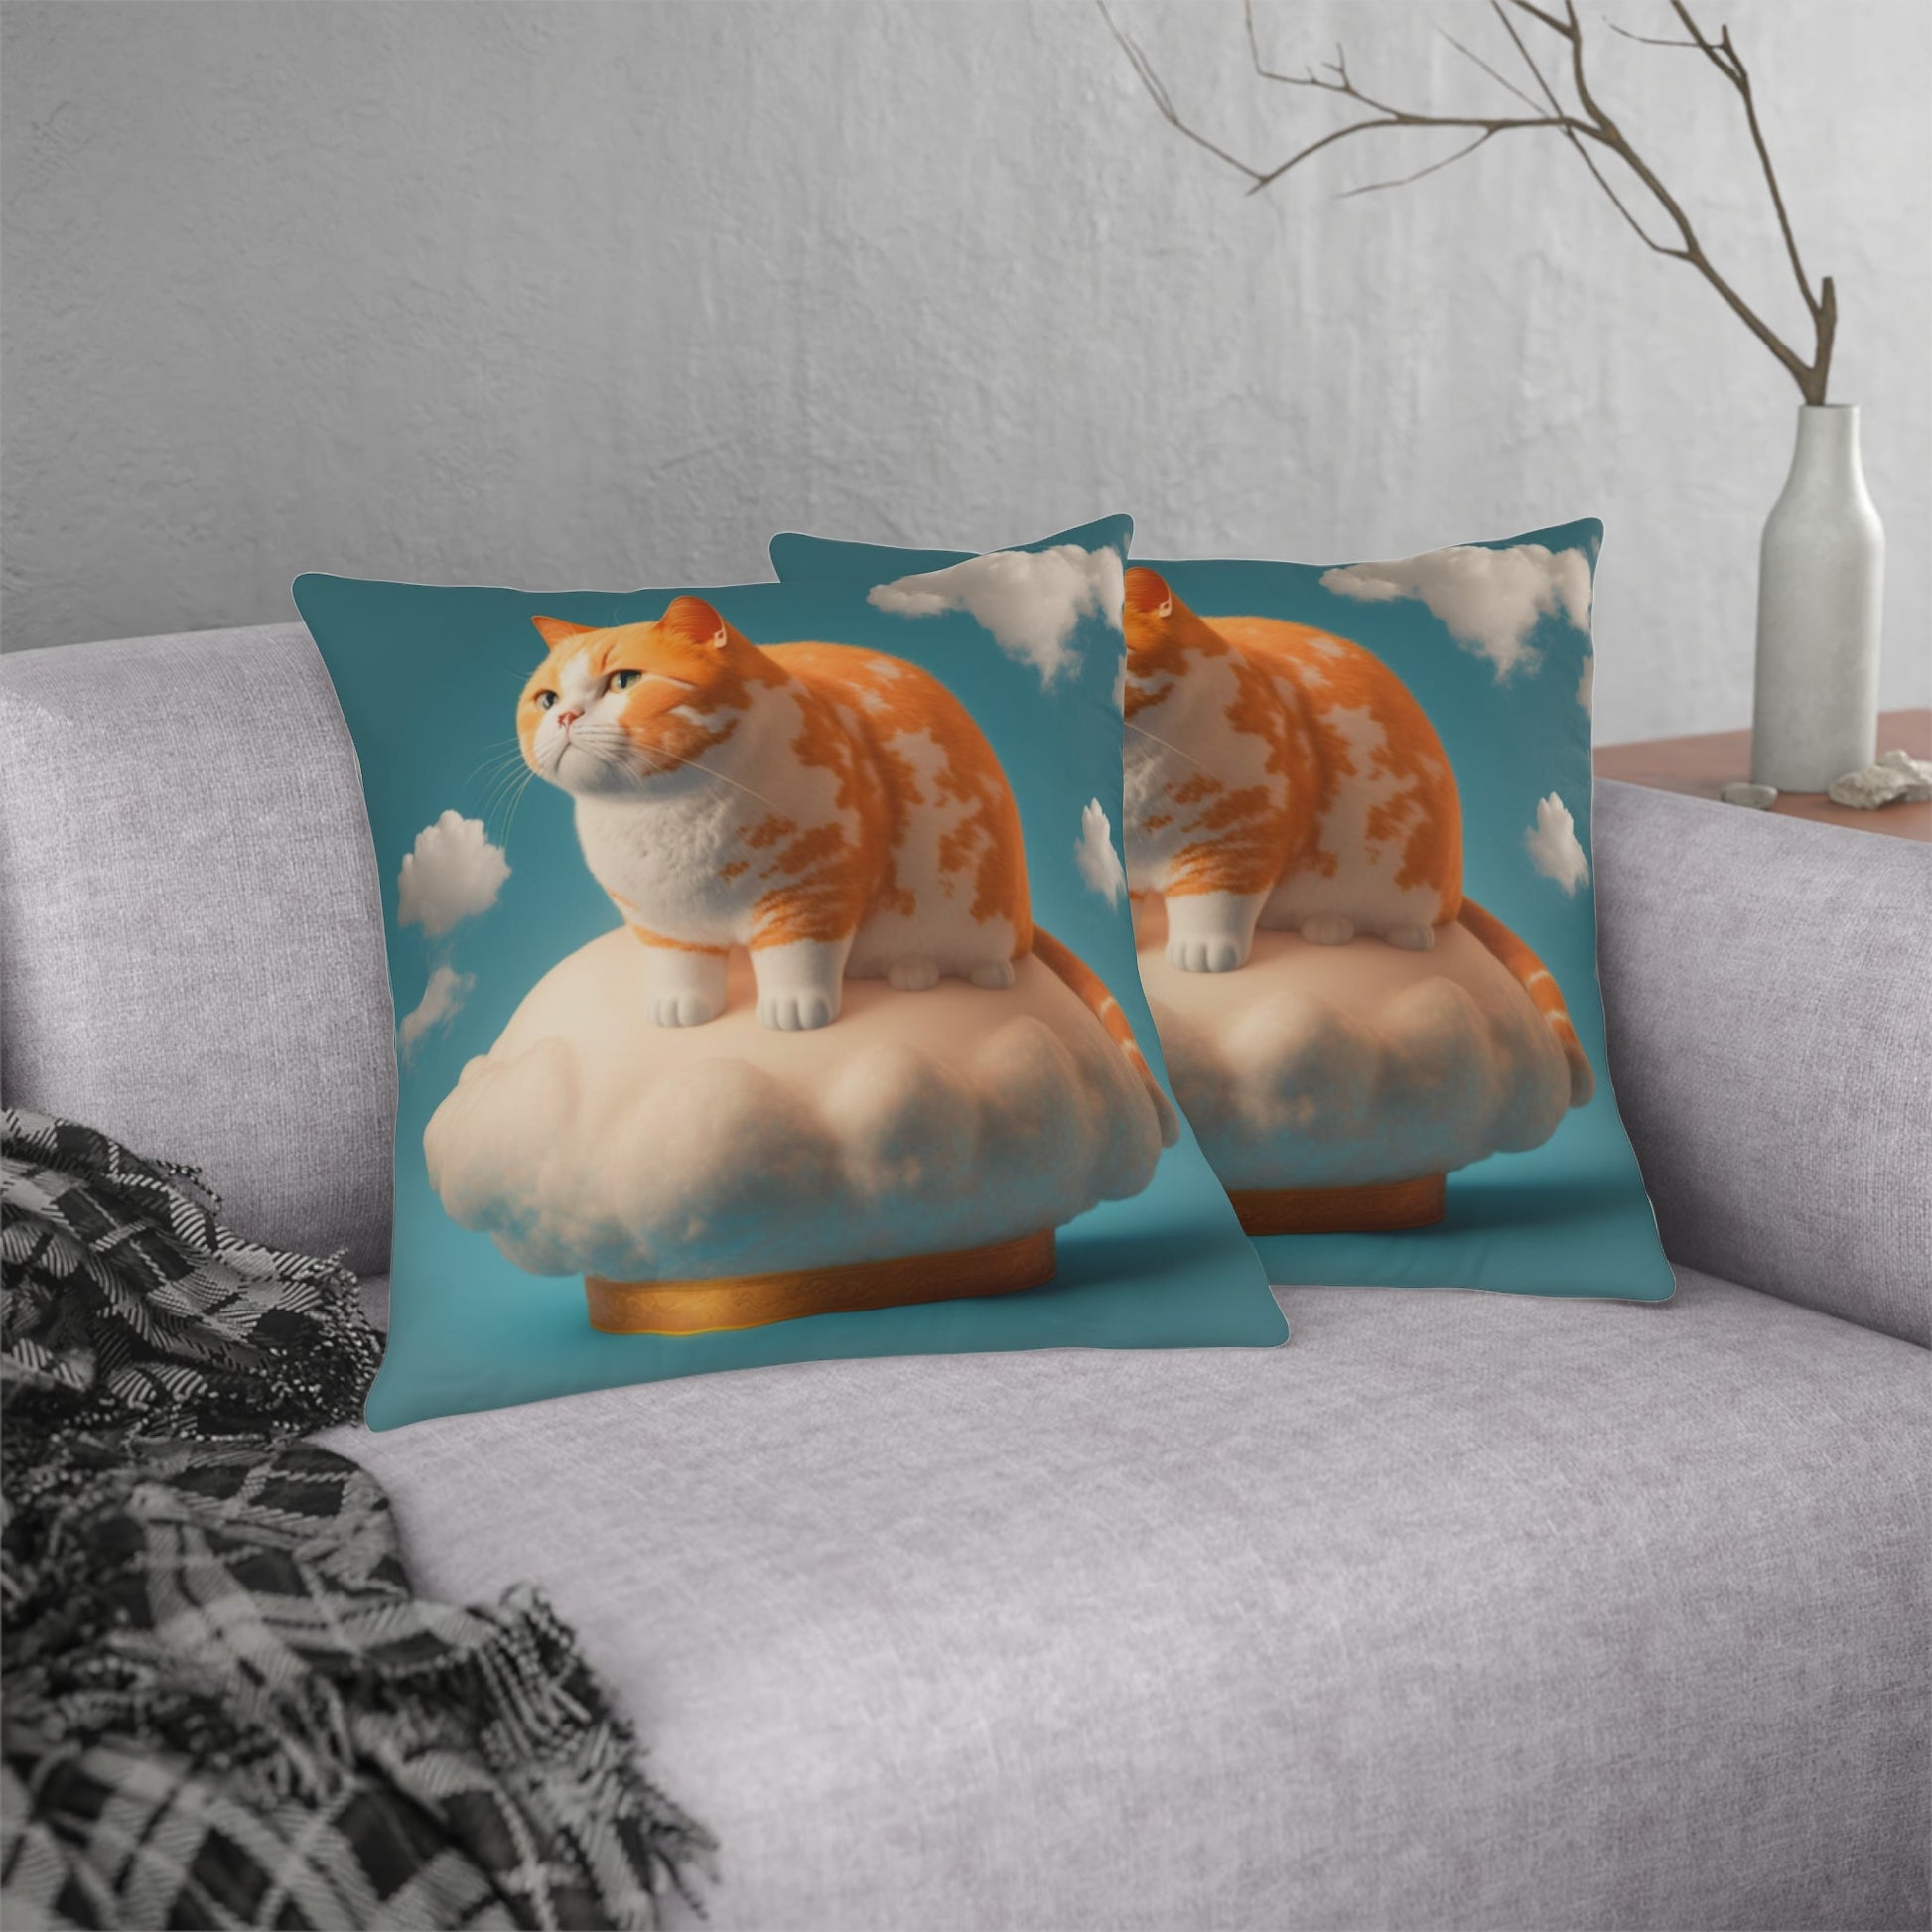 Home Decor - Ginger Cat On The Pedestal Floor Pillow Waterproof Pillows